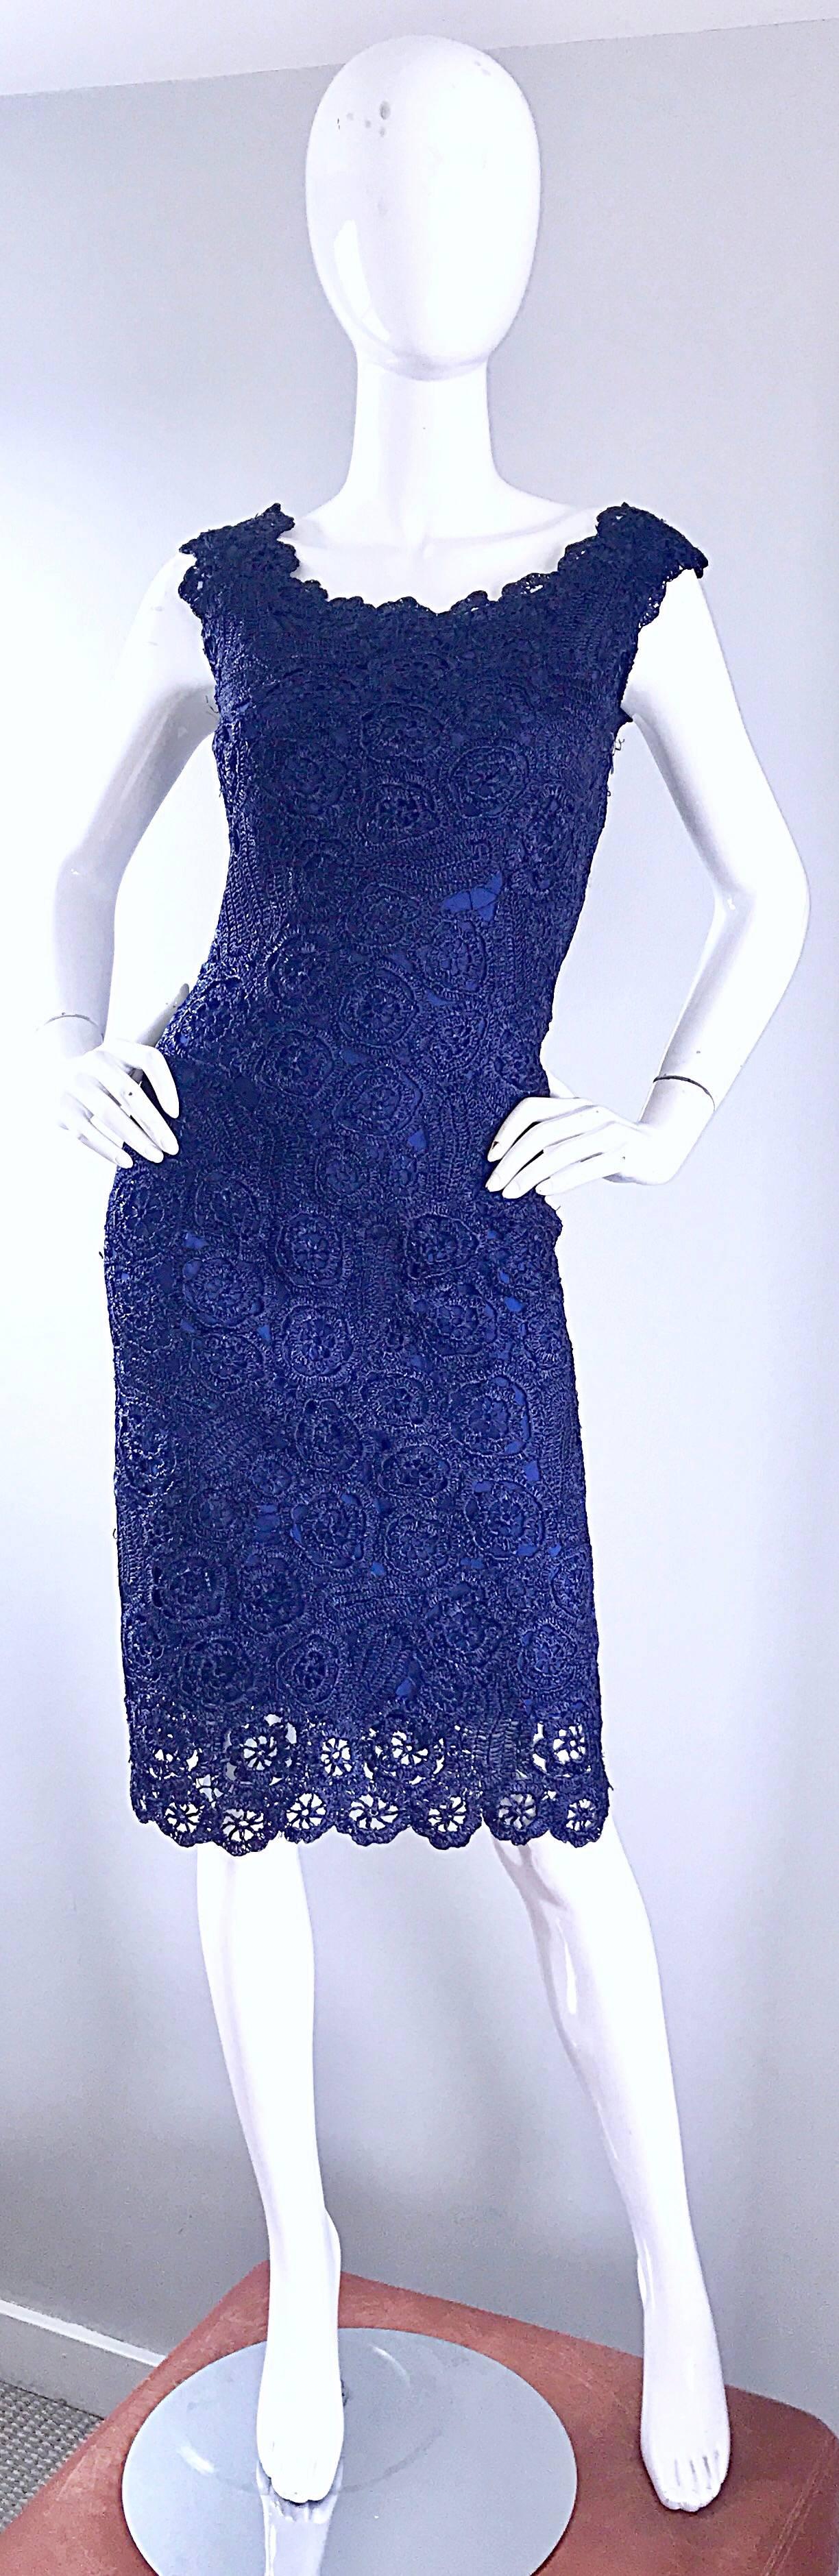 Superbe robe Demi Couture bleu marine en raphia des années 1950 ! Raphia bleu marine vibrant avec une doublure en soie. Fermeture à glissière entièrement métallique sur le côté avec fermeture à crochet. Coupe bombesque, avec un corsage ajusté et des